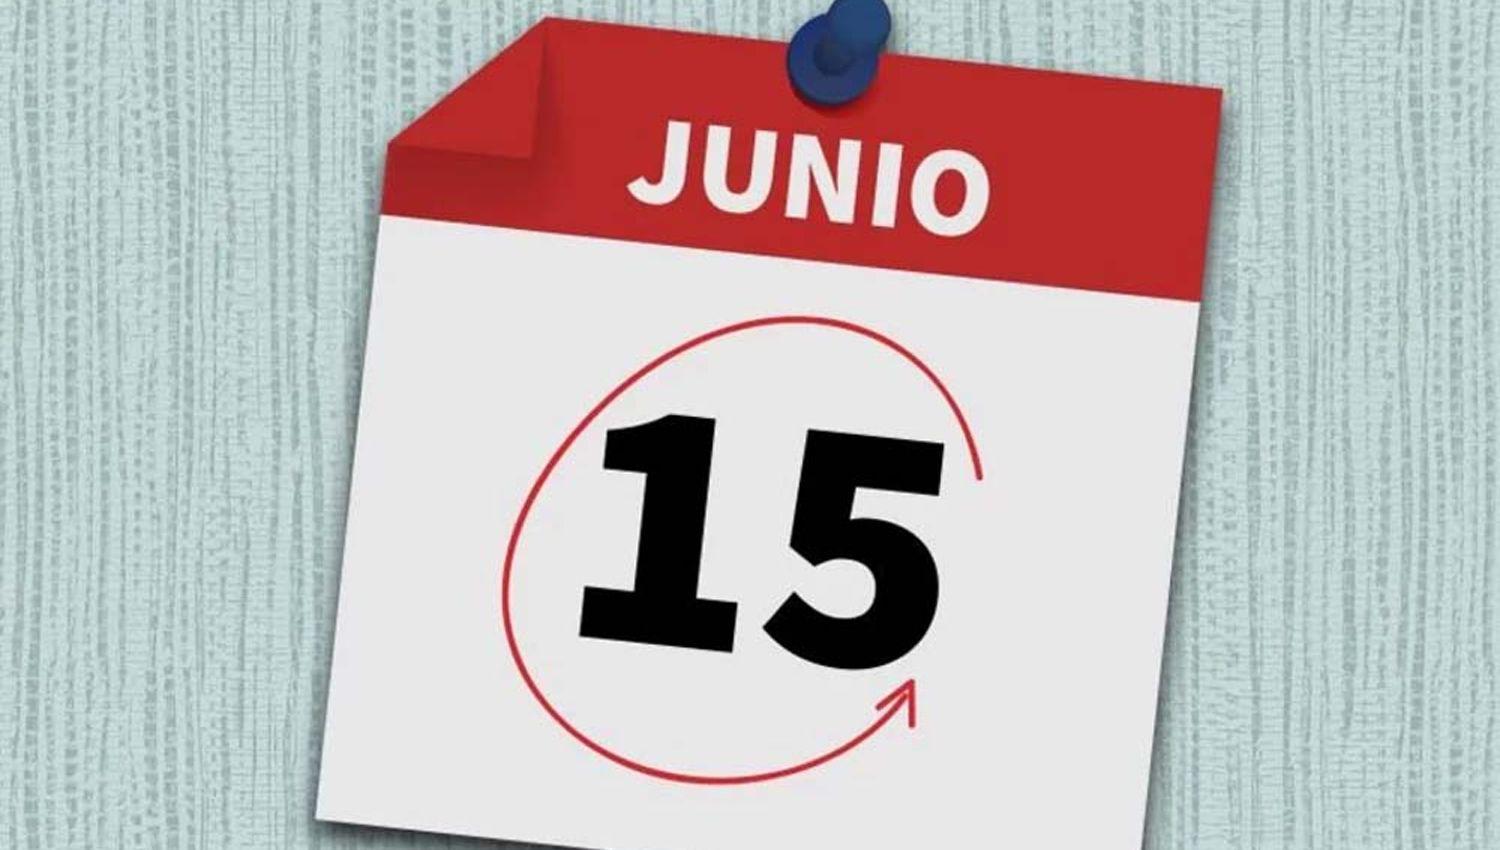 iquestPor queacute es feriado el lunes 15 de junio